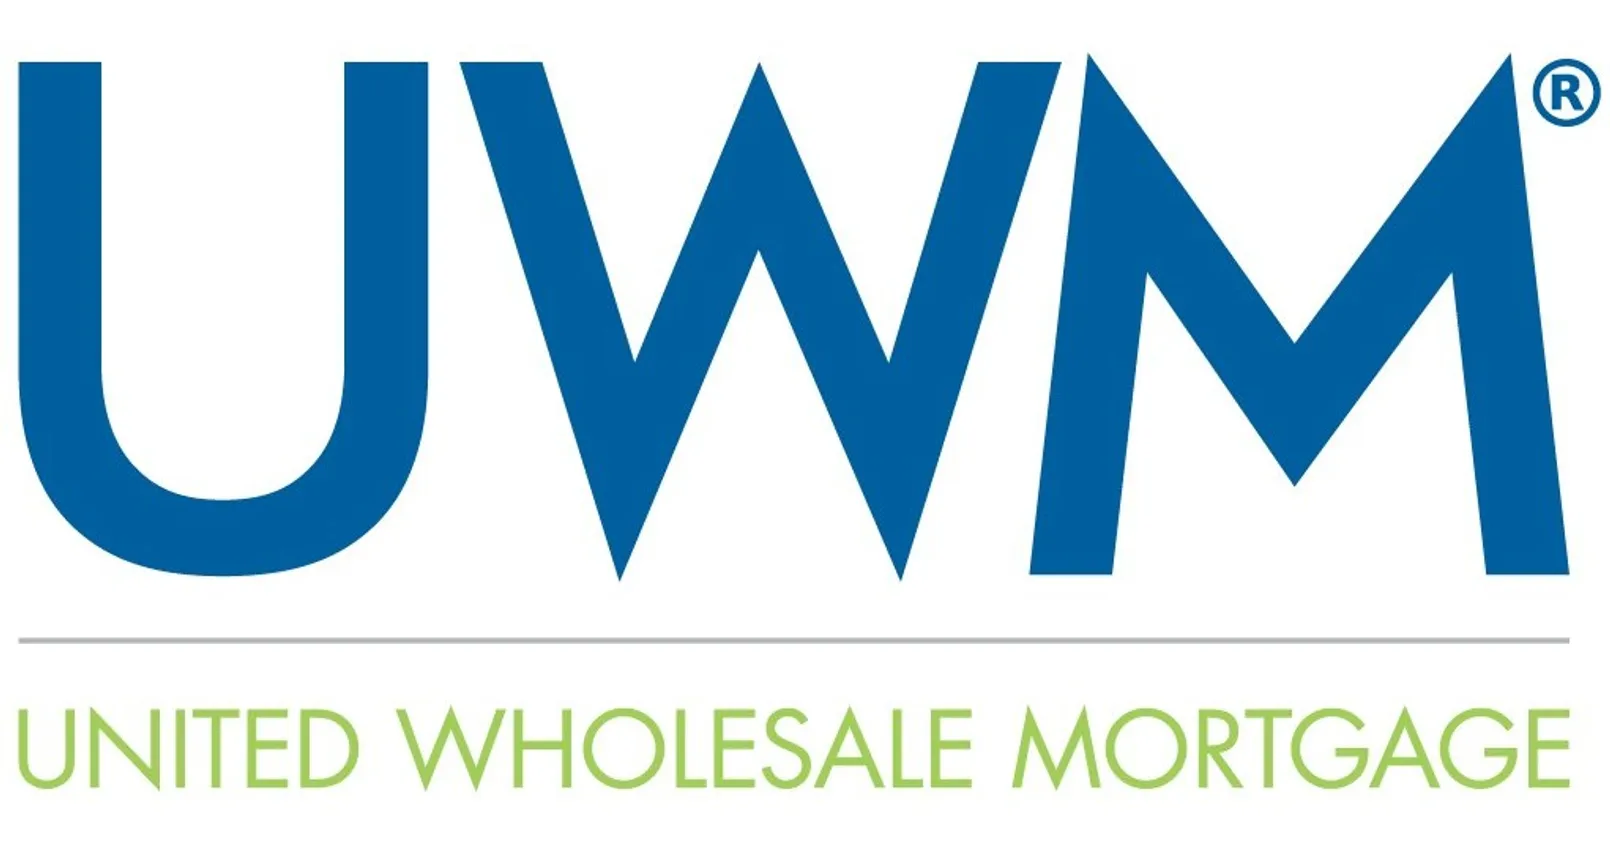 United Wholesale Mortgage Logo.jpg